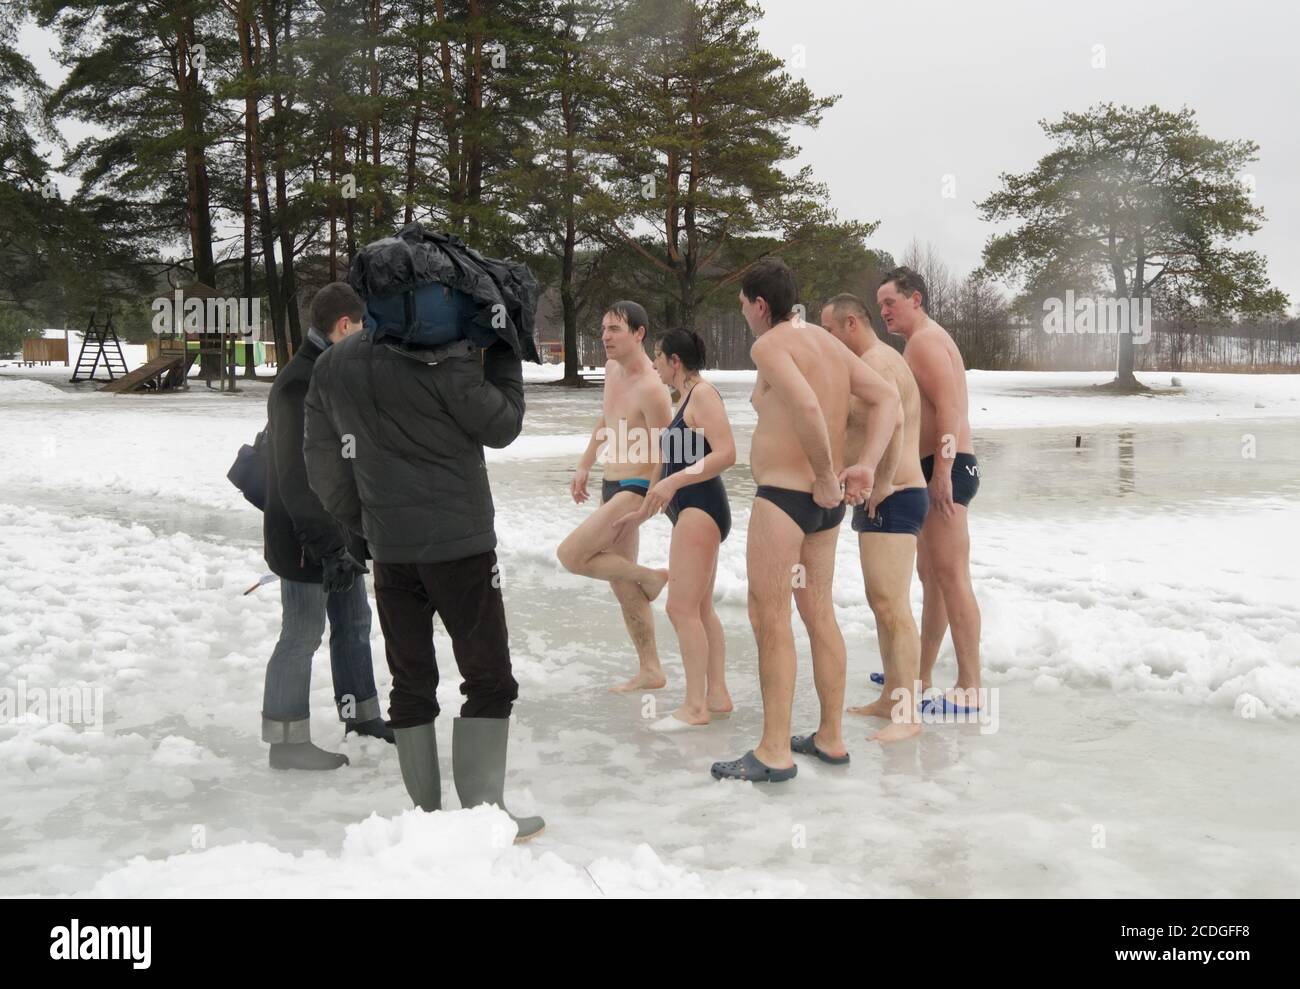 VILNIUS, Litauen – Februar 5: Fans von Winter Schwimmen nehmen ein Bad im Eis Wasser am 5. Februar 2011 in Vilnius, Lithuan Stockfoto